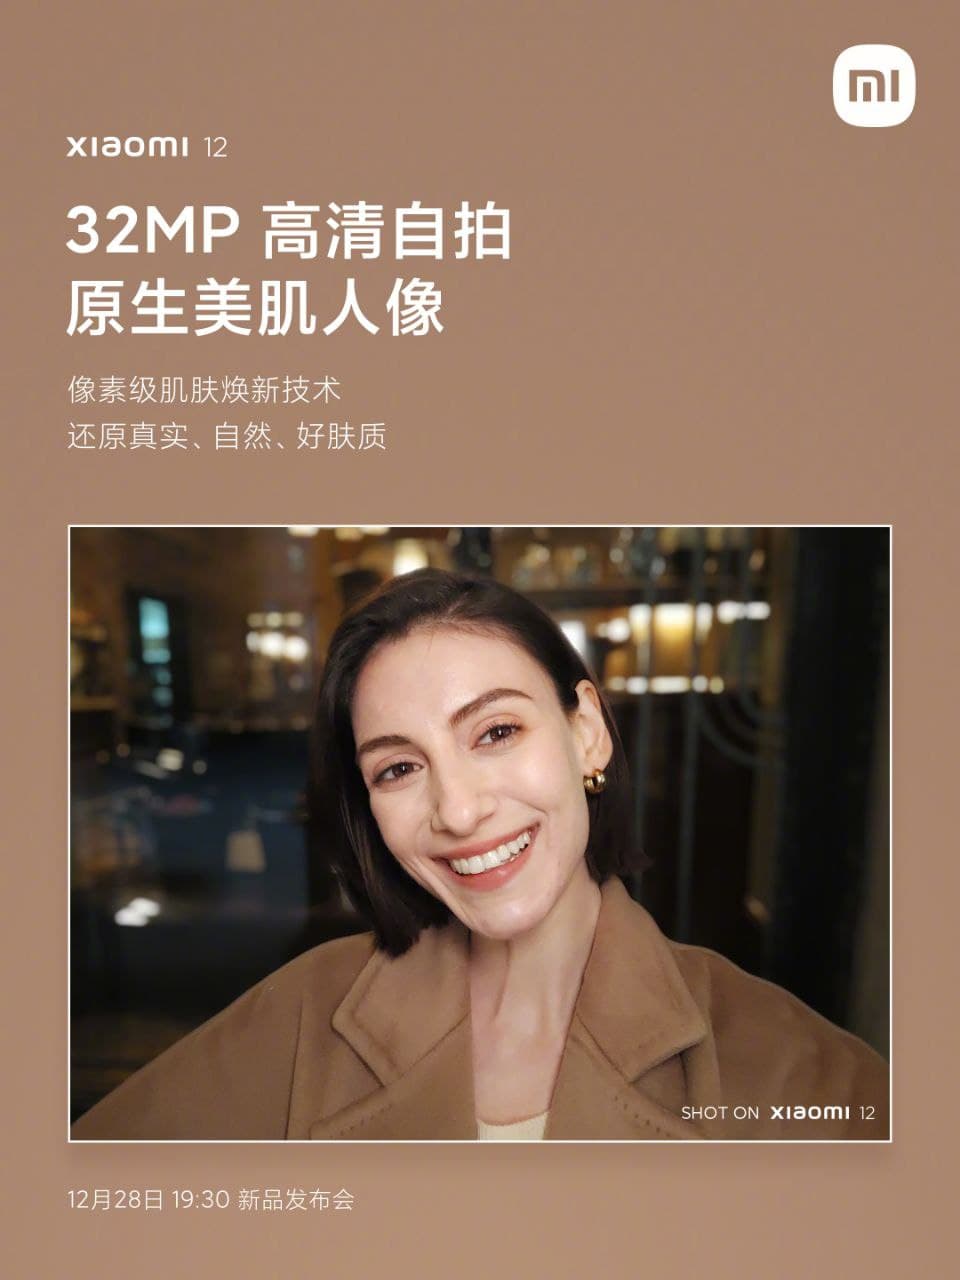 Xiaomi 12 32MP front camera